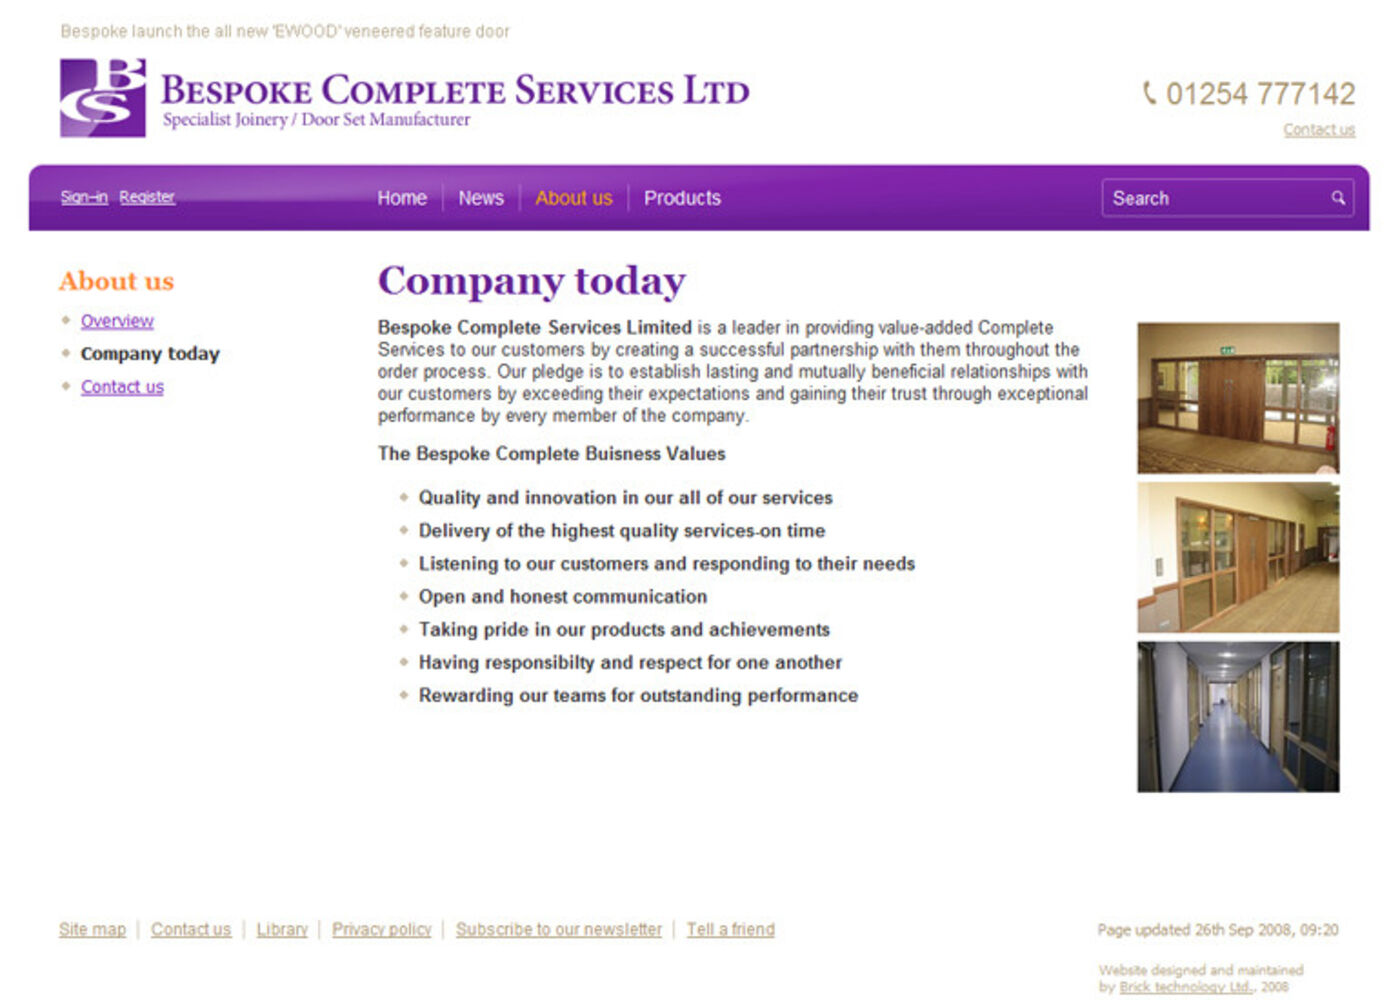 Bespoke Complete Services Ltd Regular page